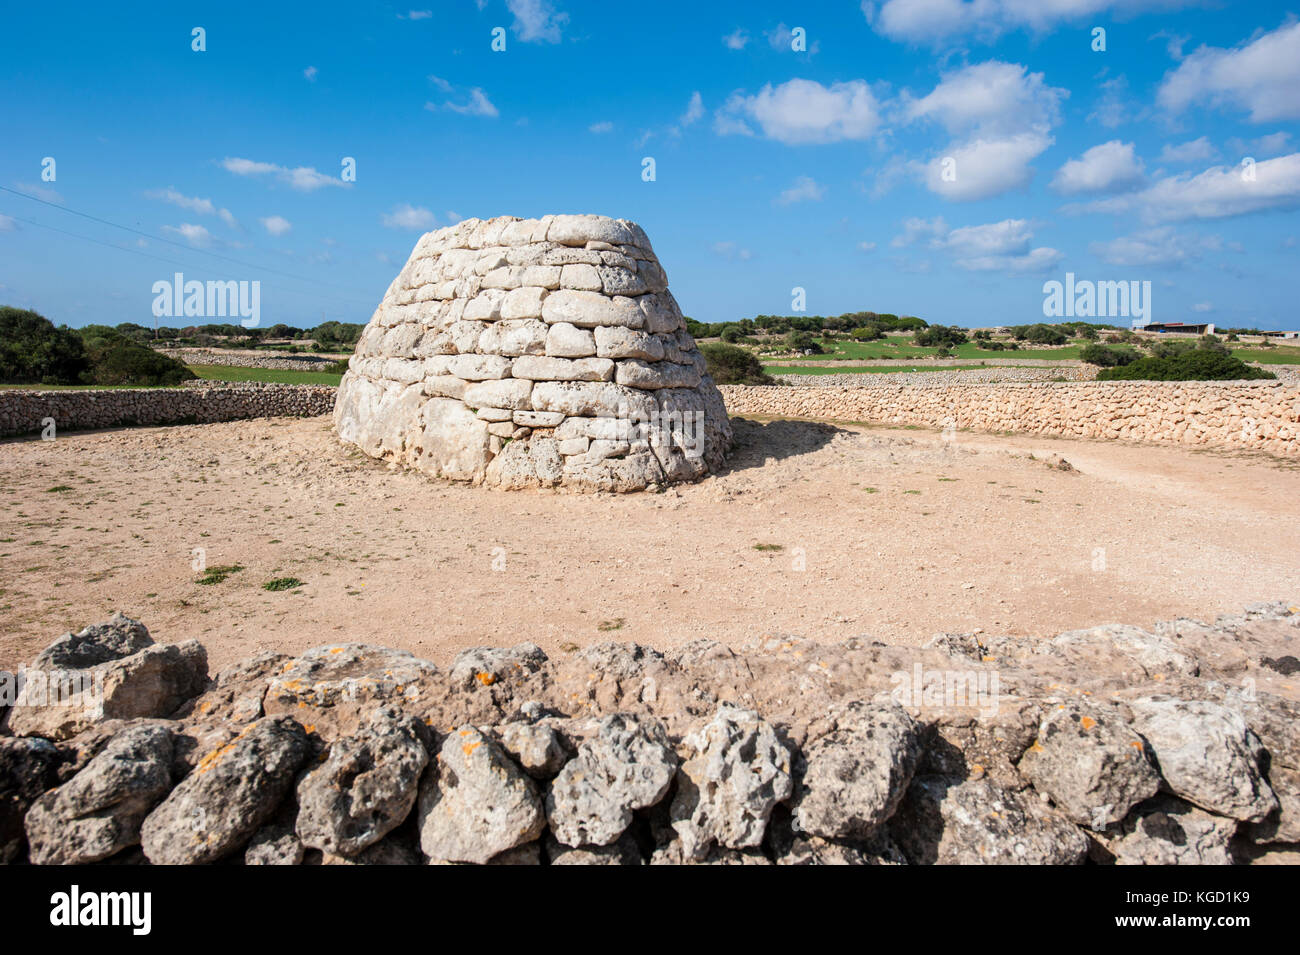 Naveta d'Es Tudons - megalithische Grabstätte in der Nähe von Ciutadella im westlichen Teil von Menorca, Balearen, Spanien, Mediterrranean Meer. Stockfoto